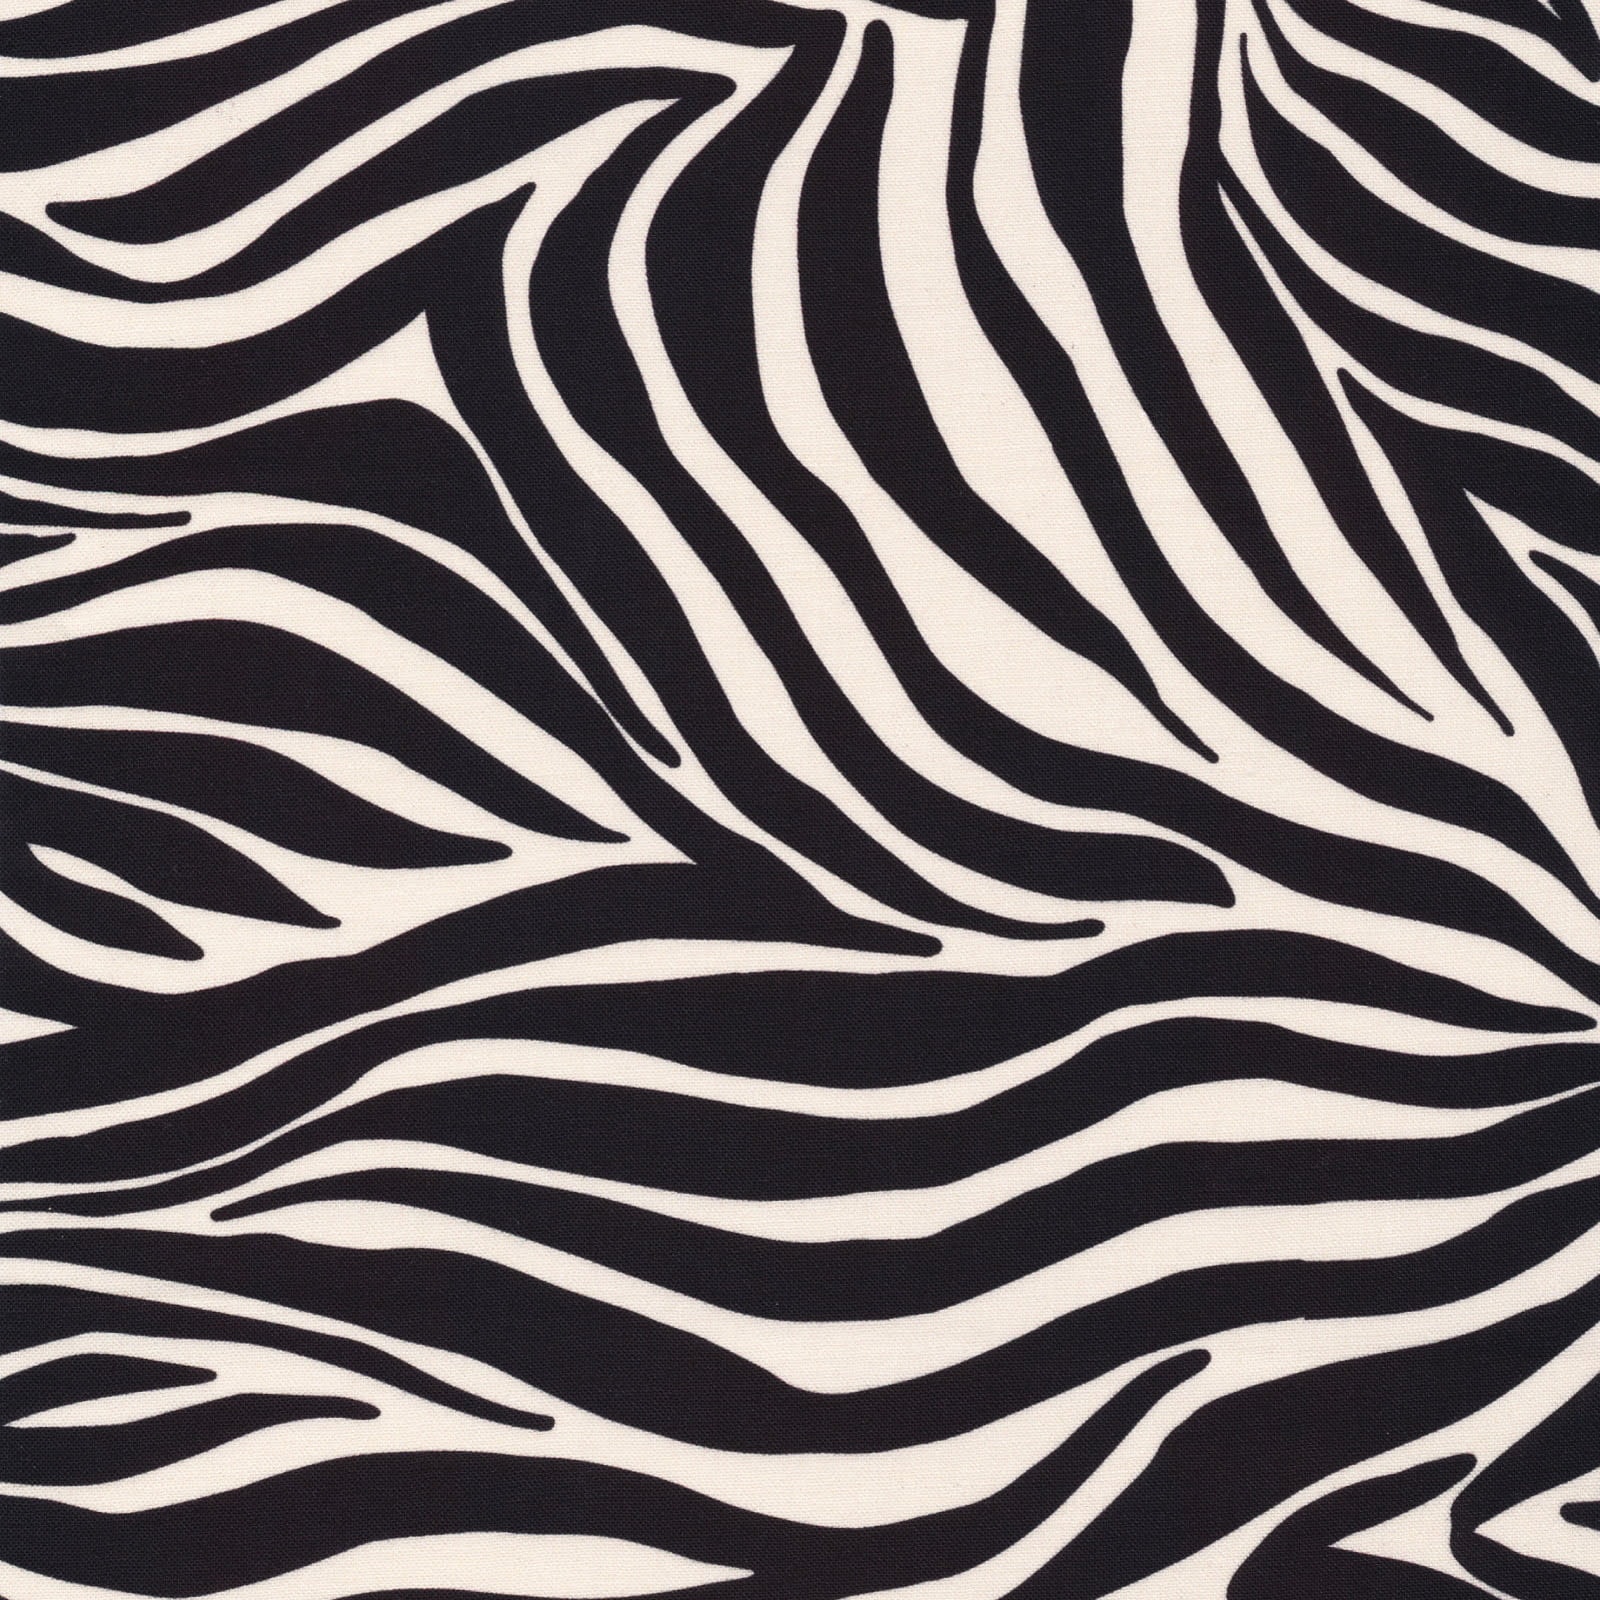 Zebra Stripes - Black